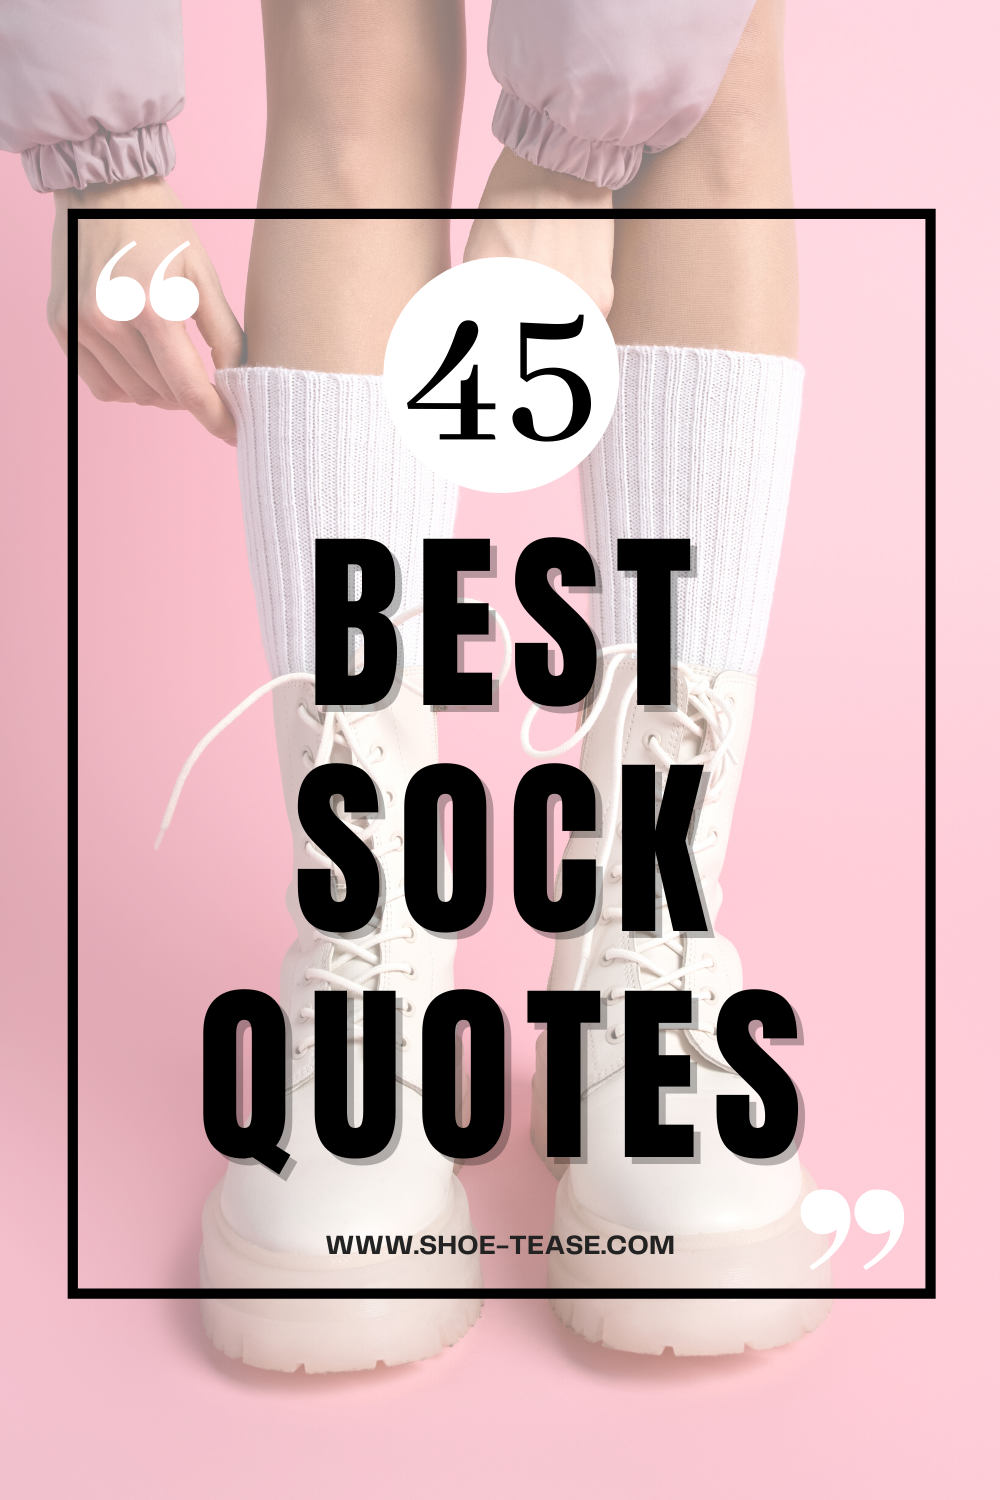 dobby quotes sock